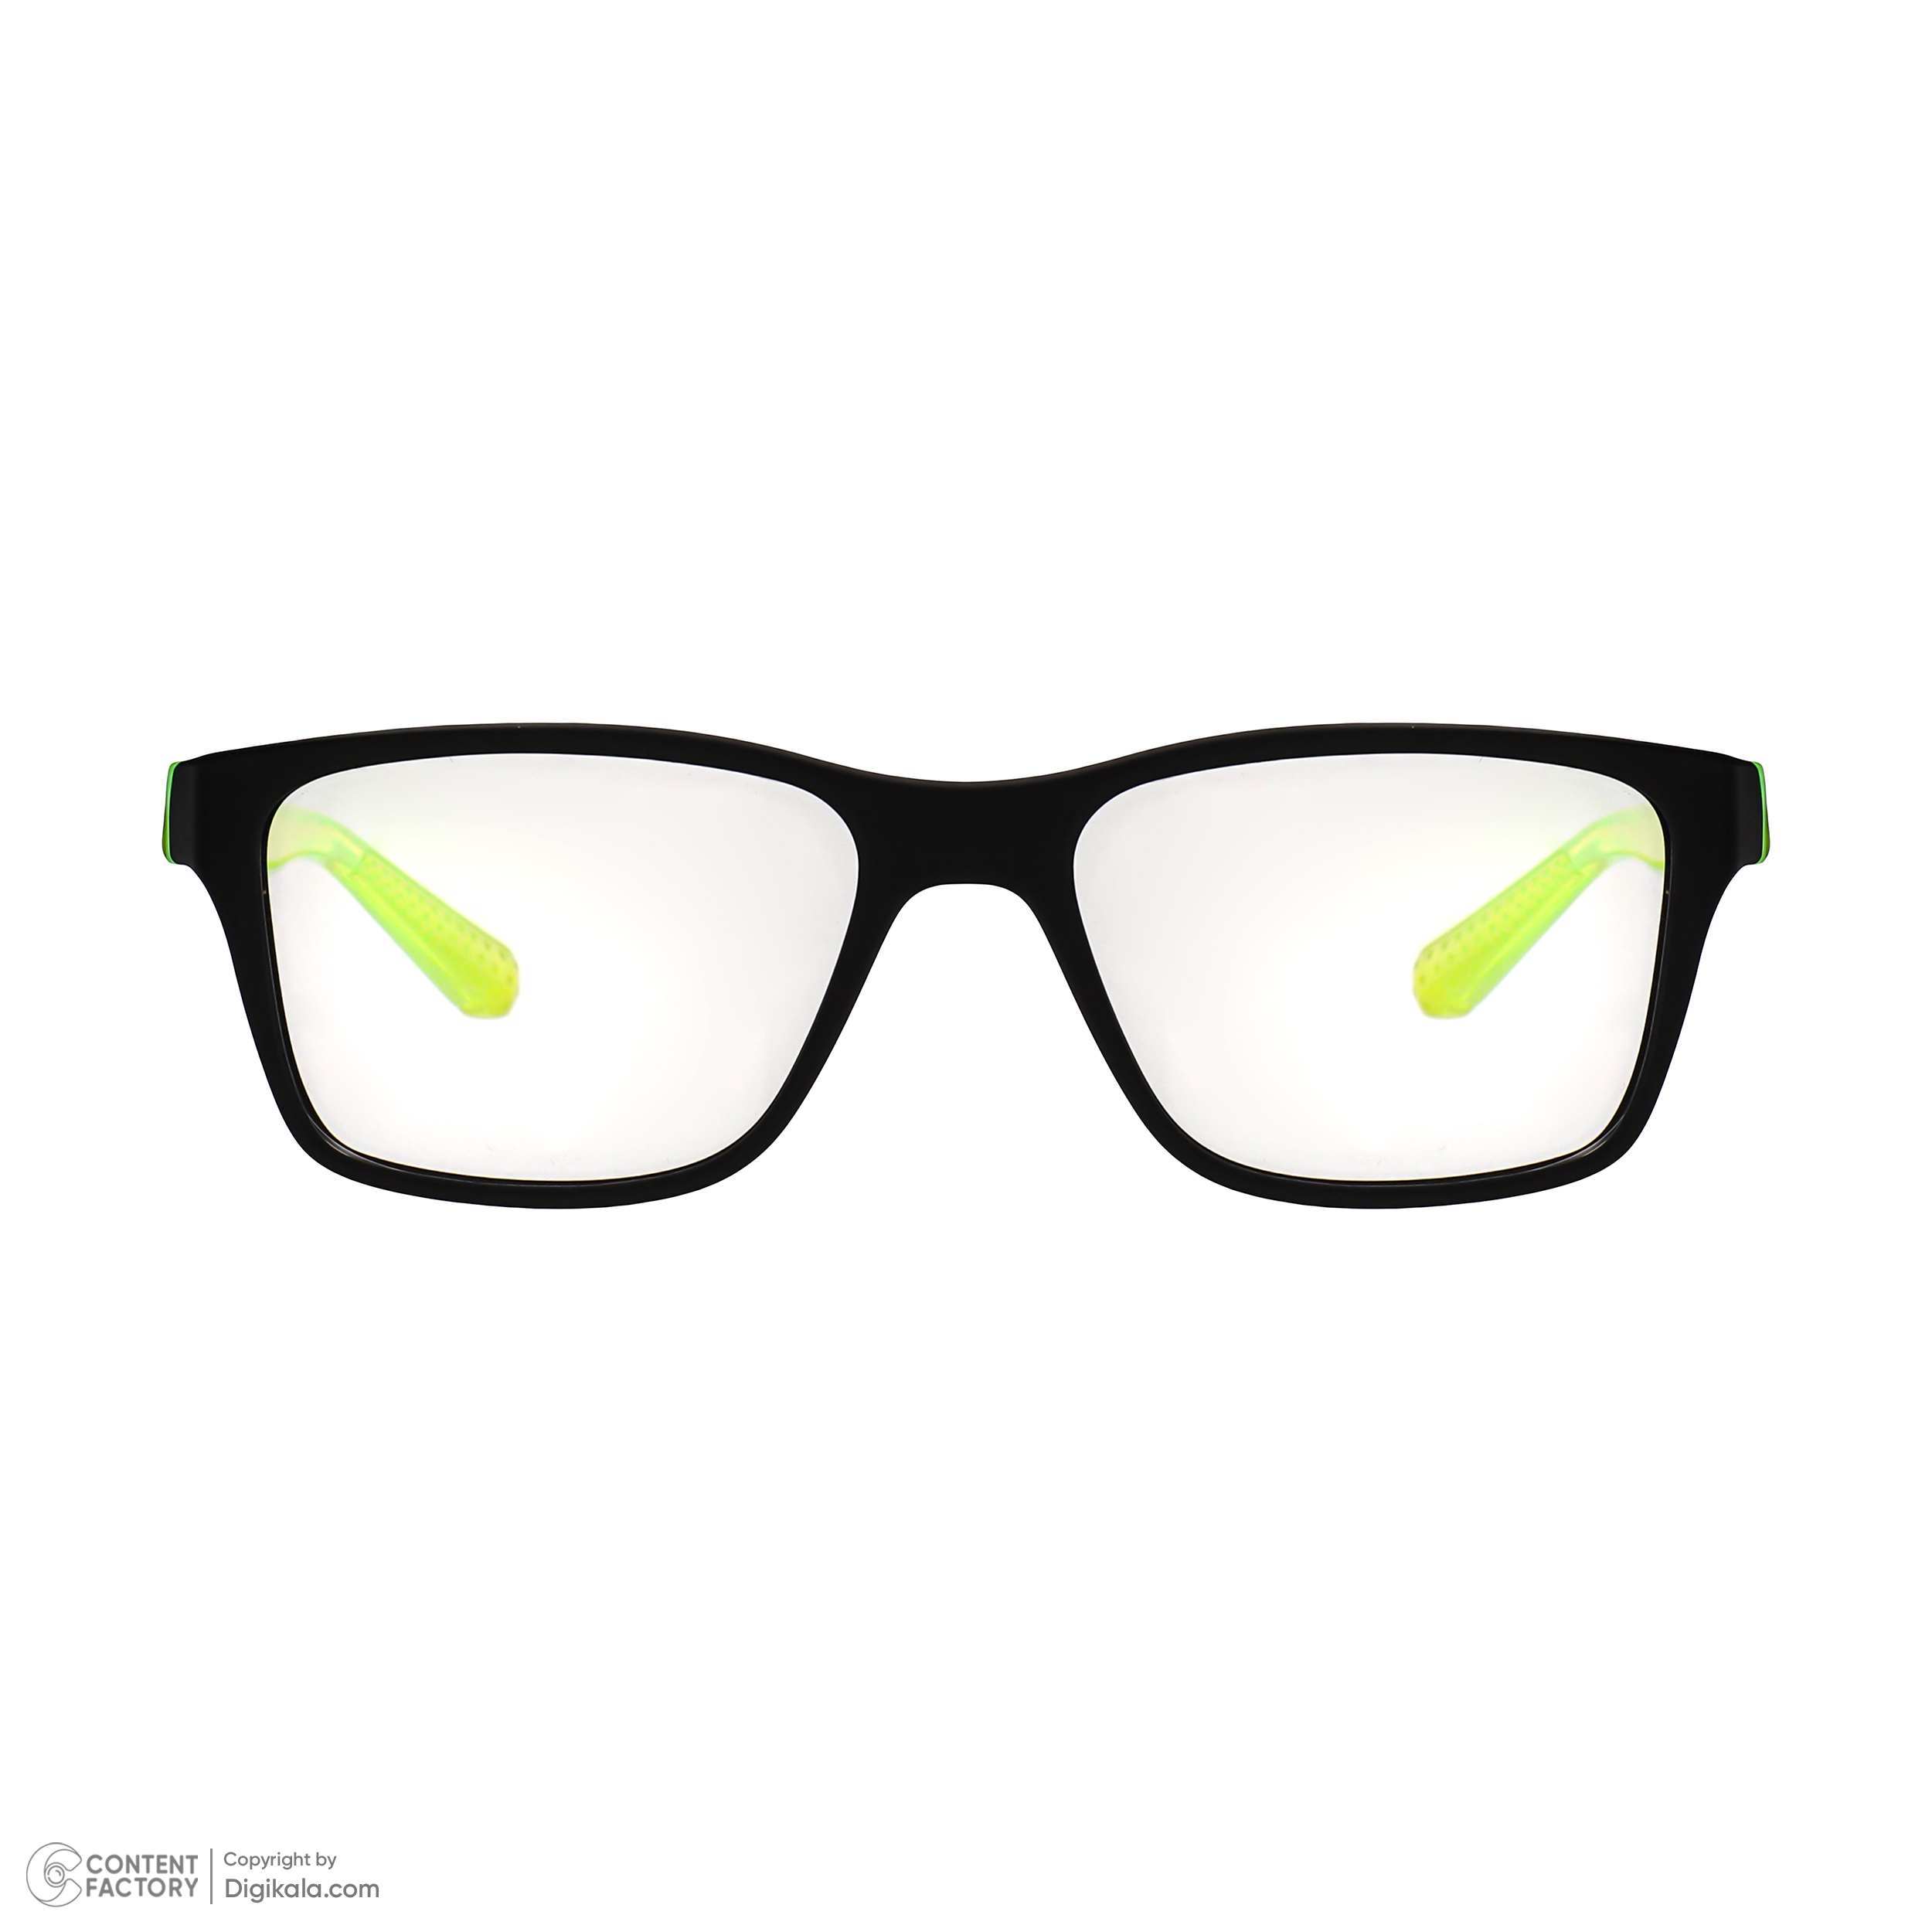 فریم عینک طبی نایکی مدل 5532-11 -  - 3